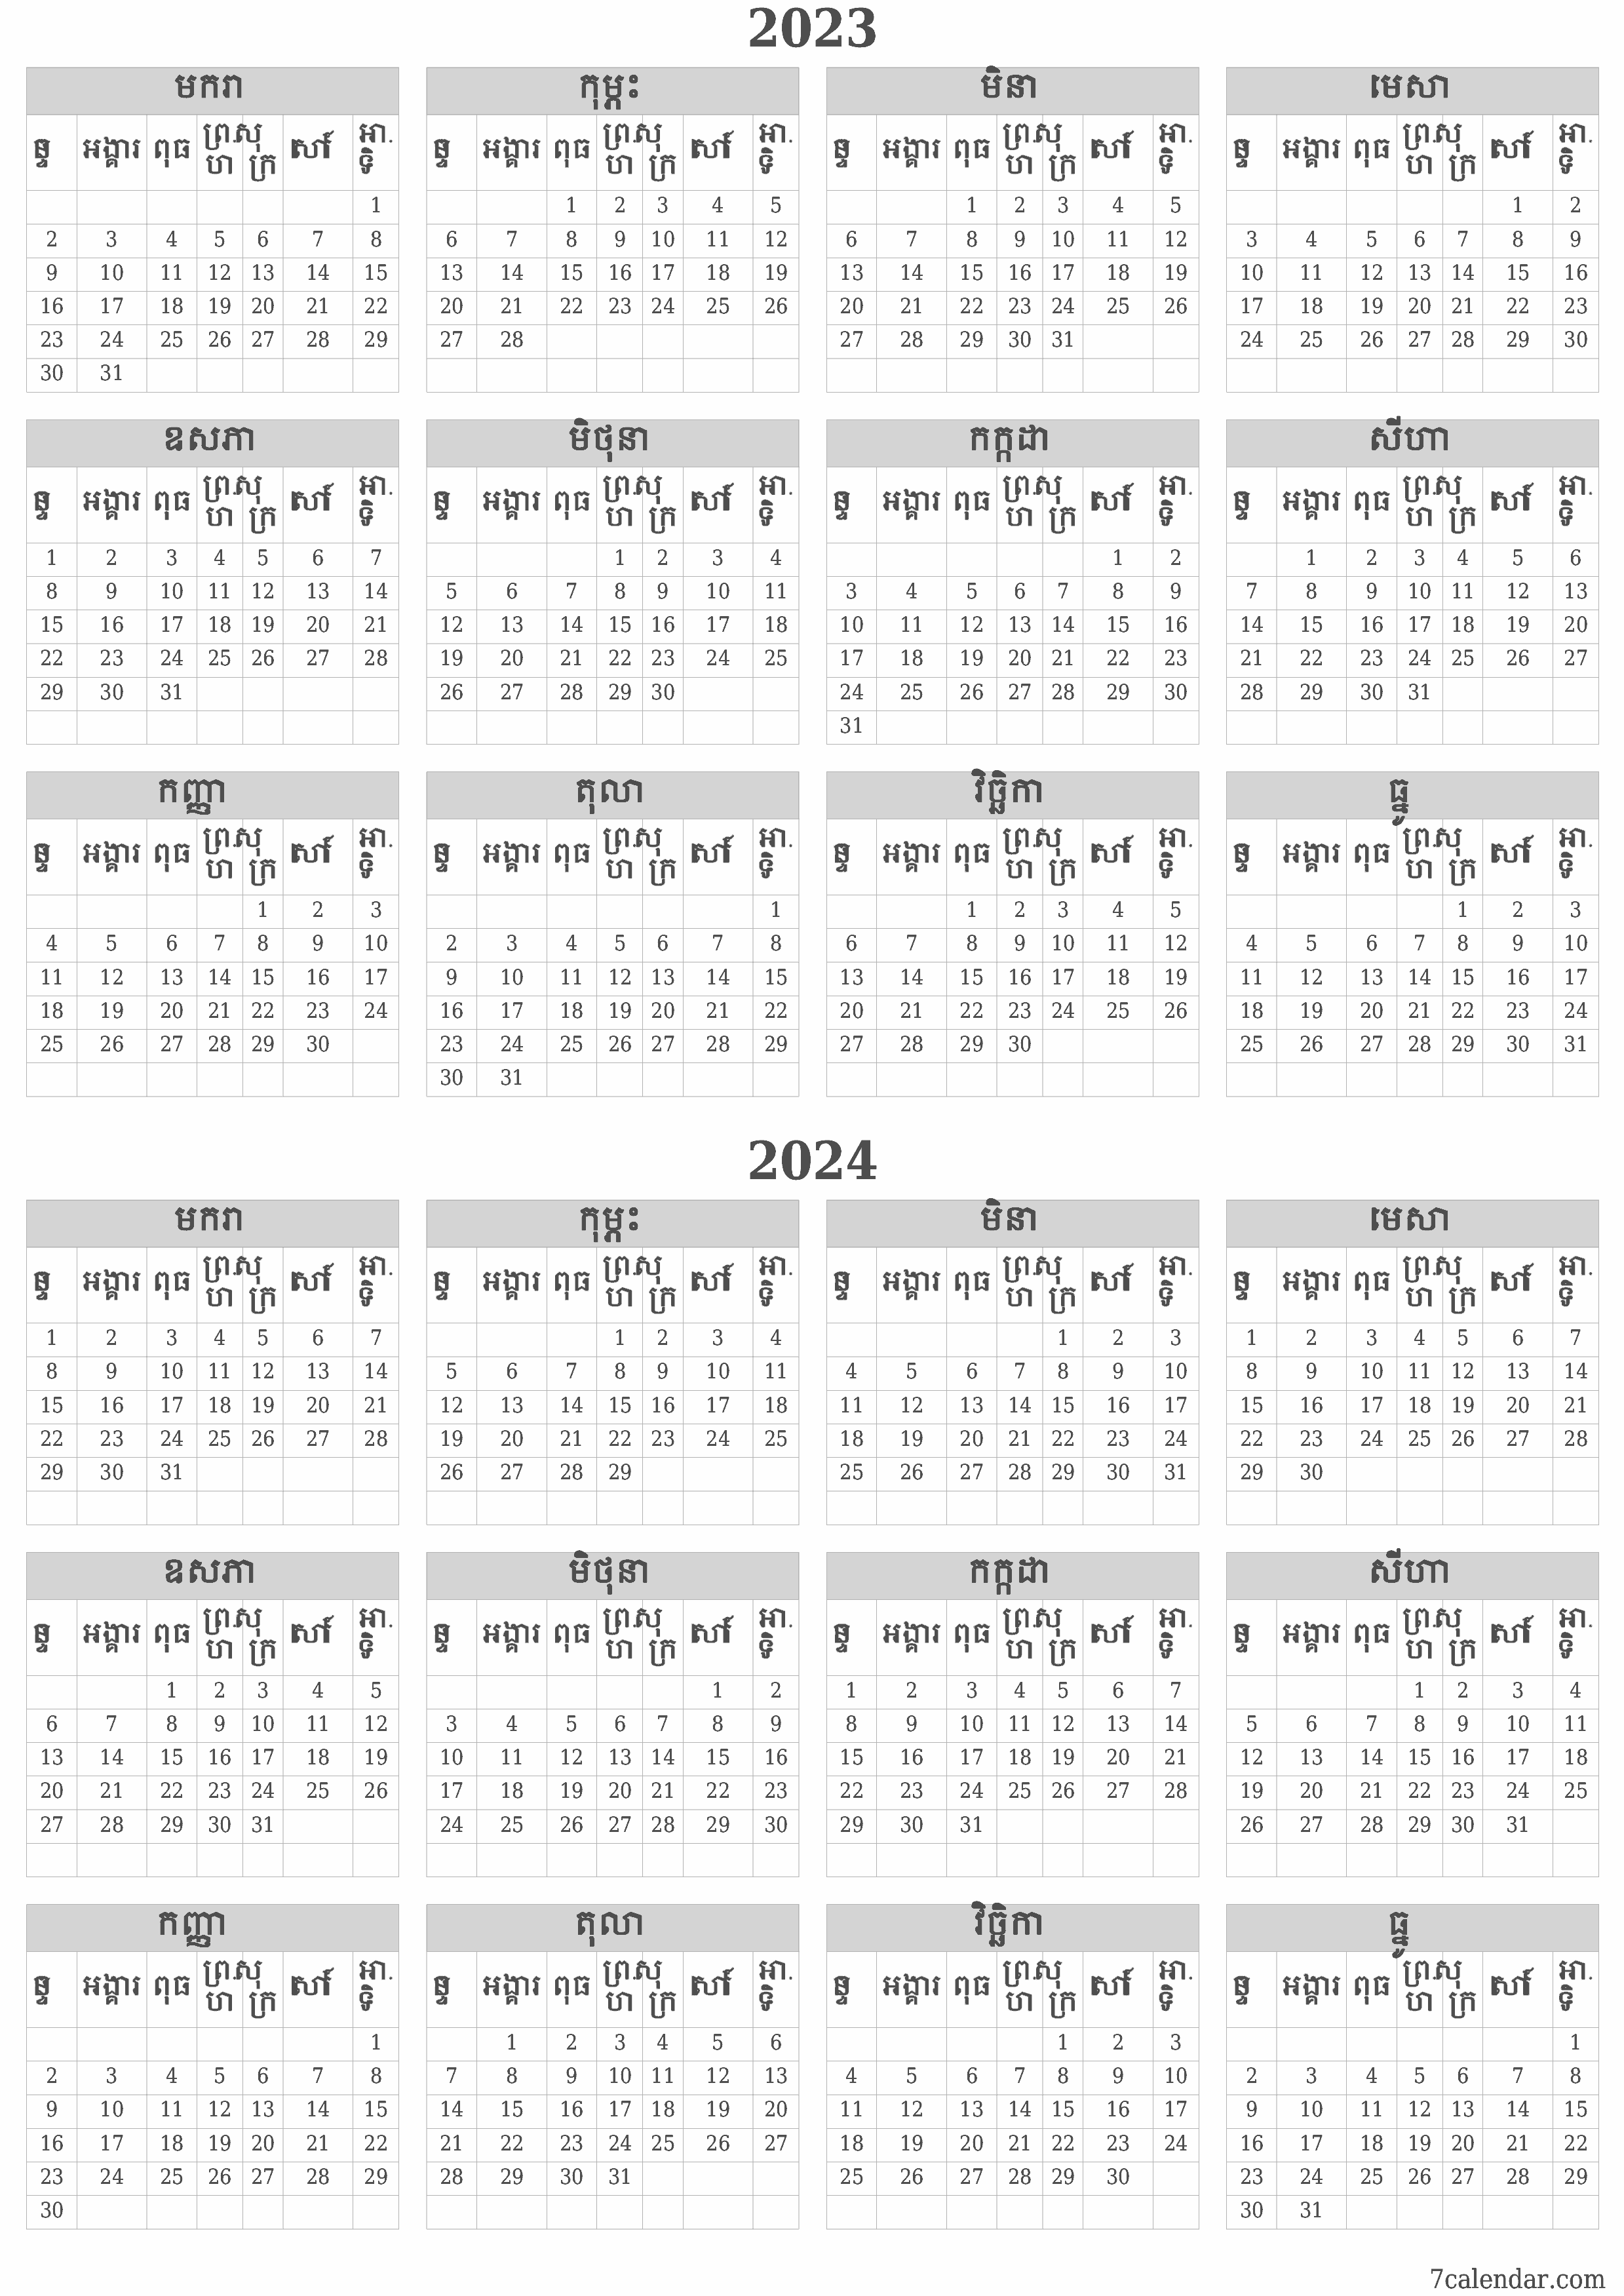 គំរូរូបភាពប្រតិទិន HD ប្រចាំខែទទេប្រចាំឆ្នាំសម្រាប់ឆ្នាំ 2023, 2024 រក្សាទុកនិងបោះពុម្ពជា PDF PNG Khmer - 7calendar.com